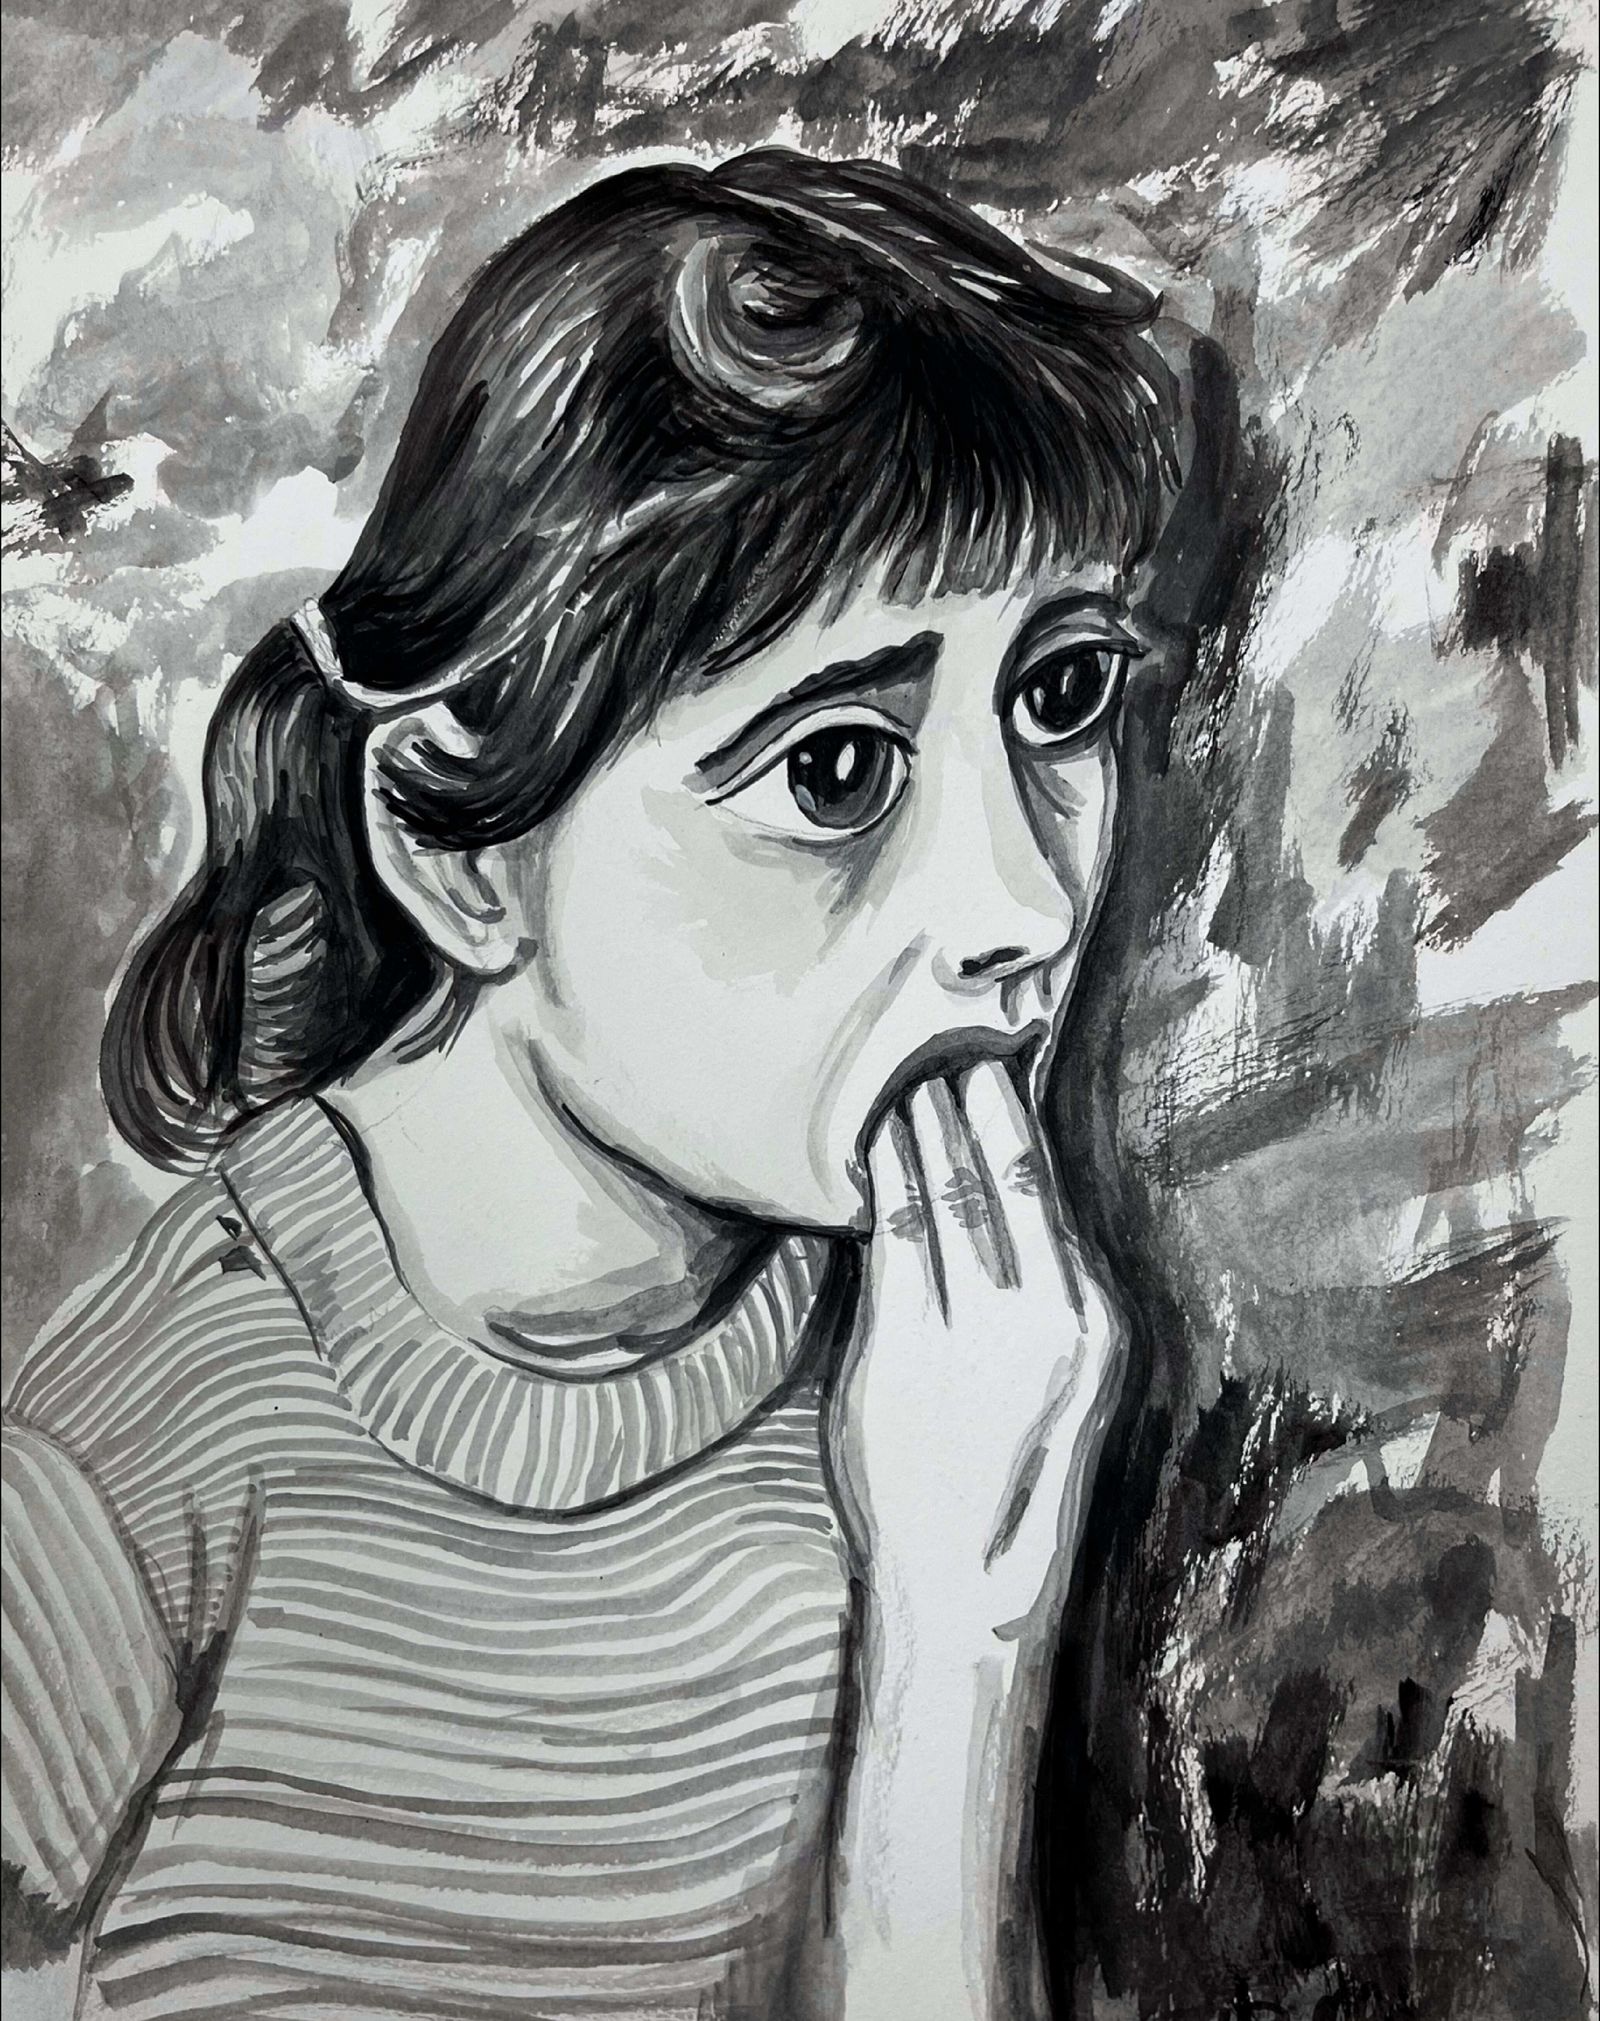 Buttenberg, ängstliches Mädchen, 2012, 40 X 30 cm, Aquarell auf Papier